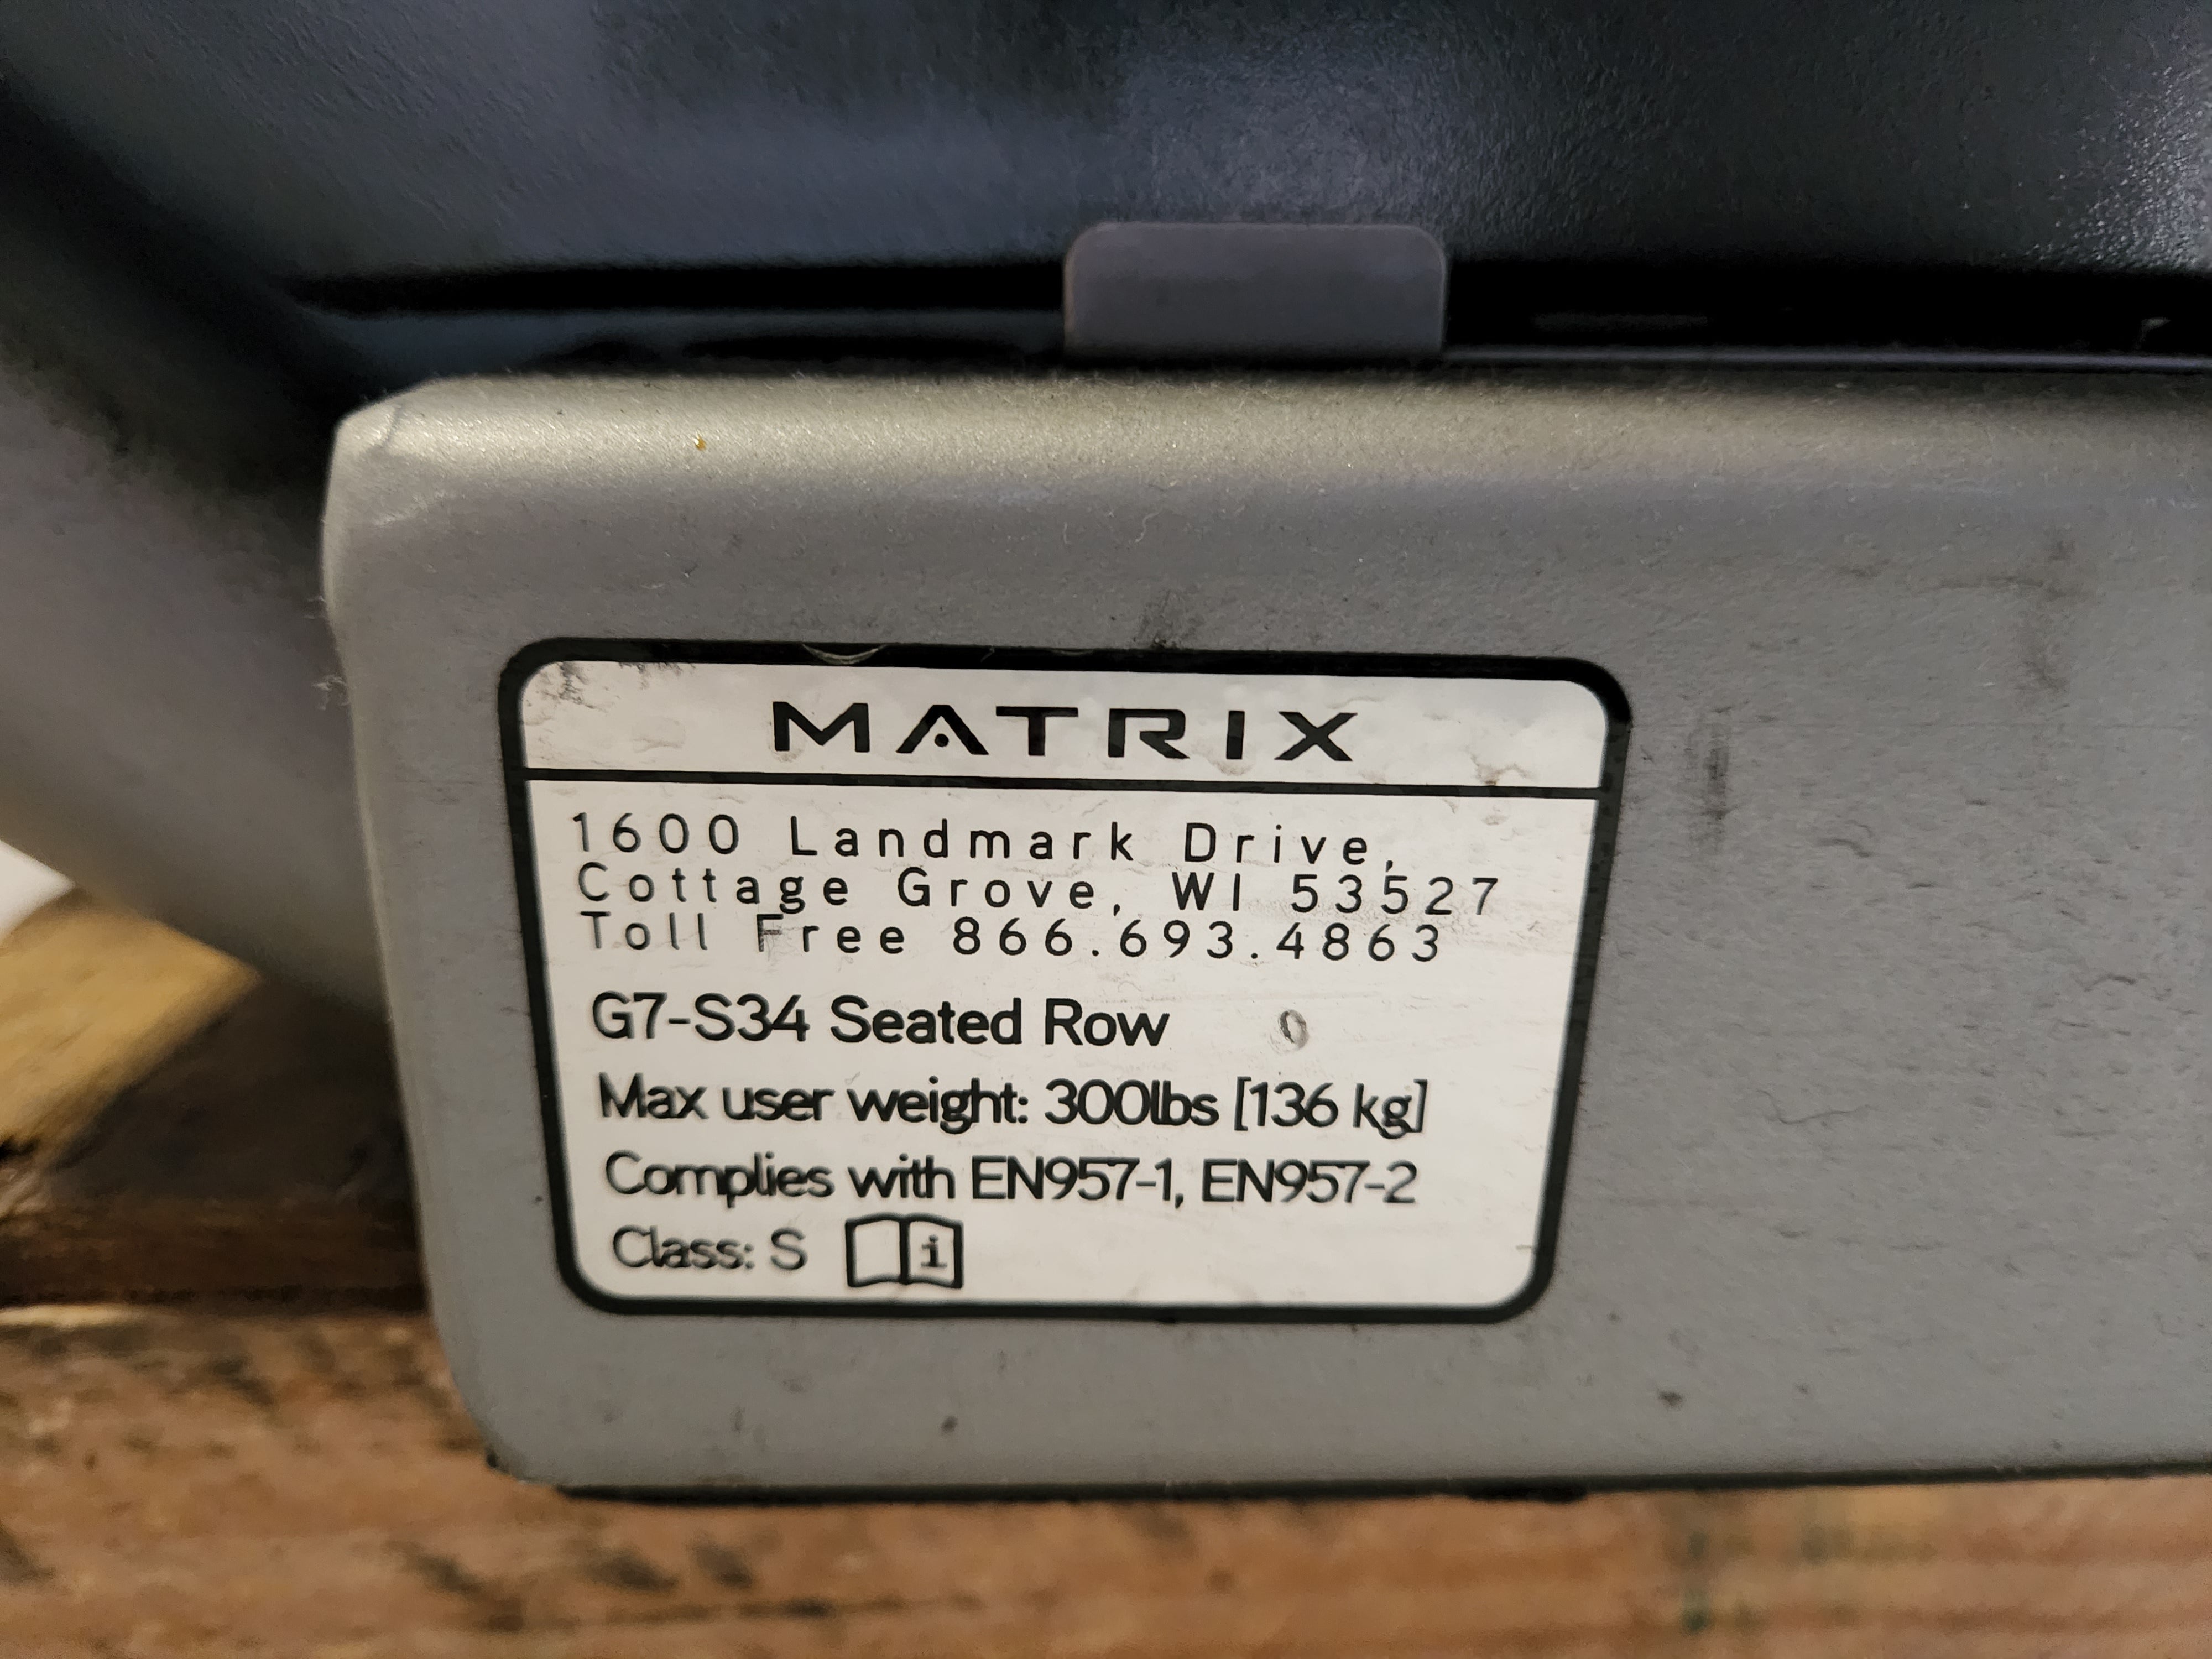 Matrix G7-S34 Seated Row Machine